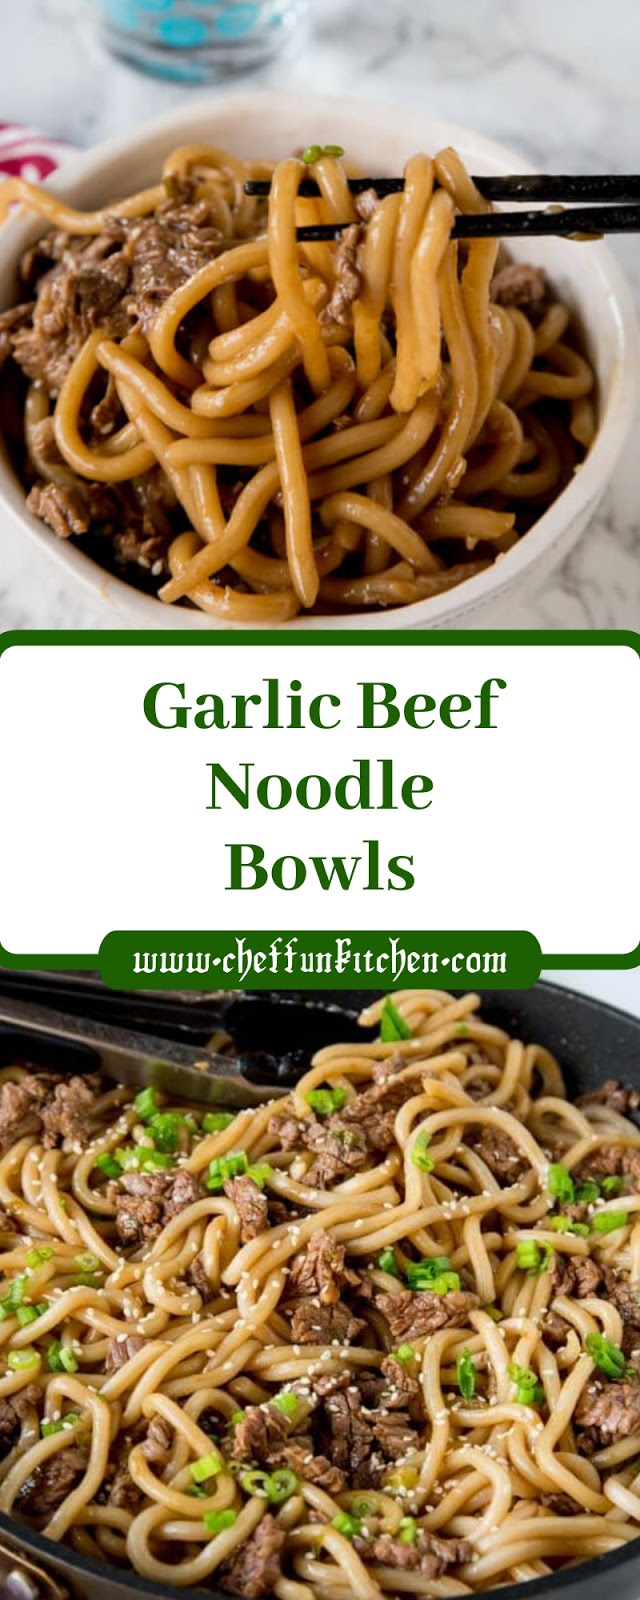 Garlic Beef Noodle Bowls